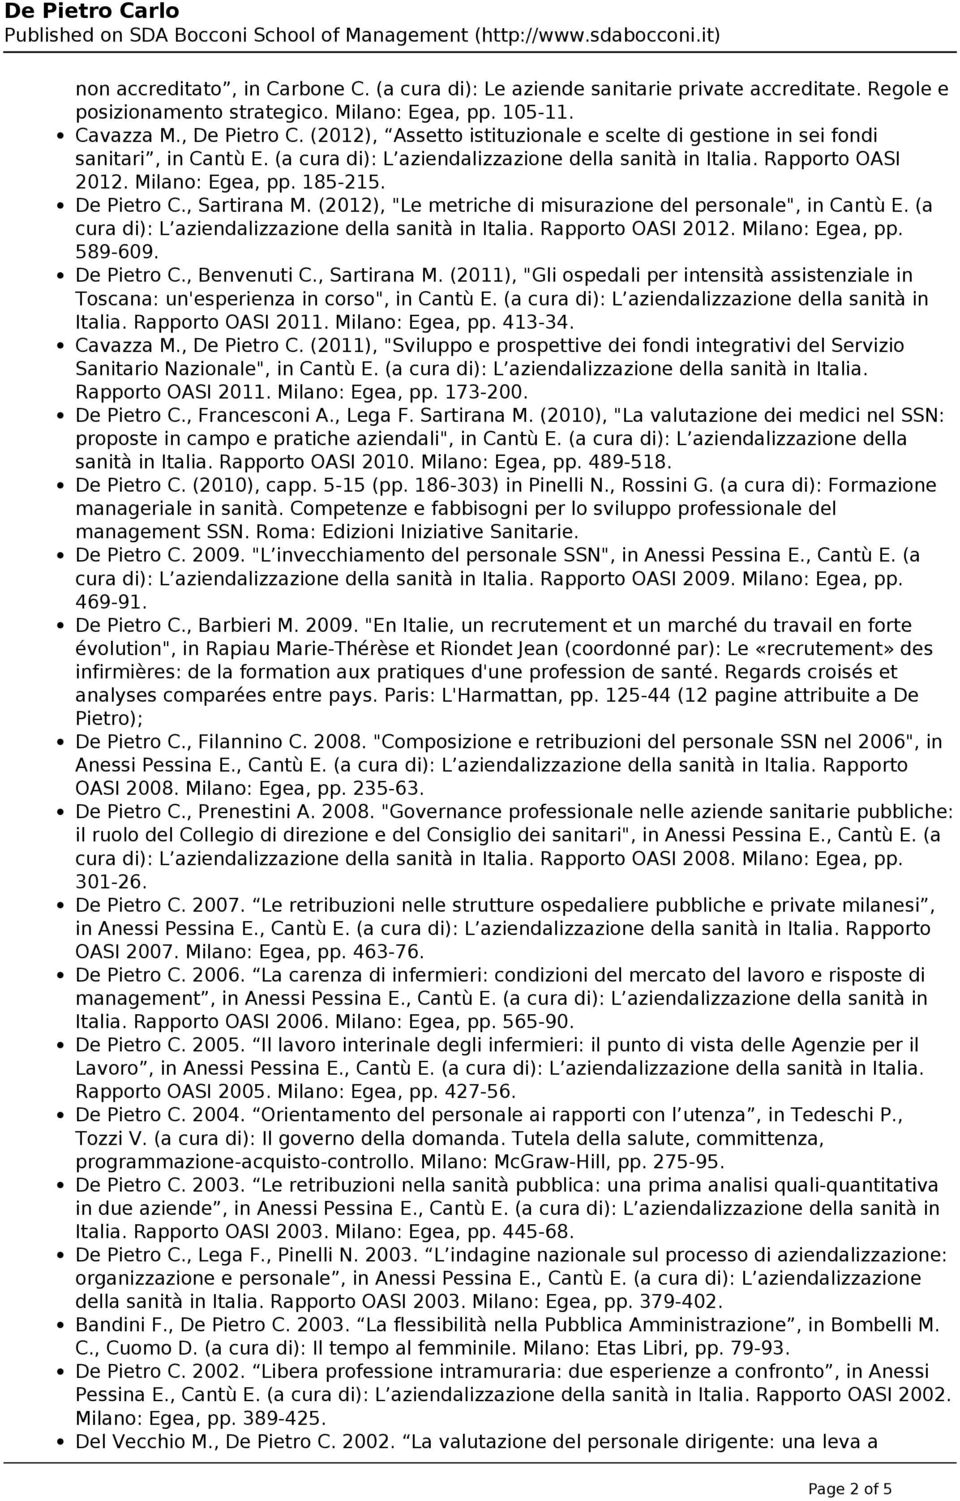 De Pietro C., Sartirana M. (2012), "Le metriche di misurazione del personale", in Cantù E. (a cura di): L aziendalizzazione della sanità in Italia. Rapporto OASI 2012. Milano: Egea, pp. 589-609.